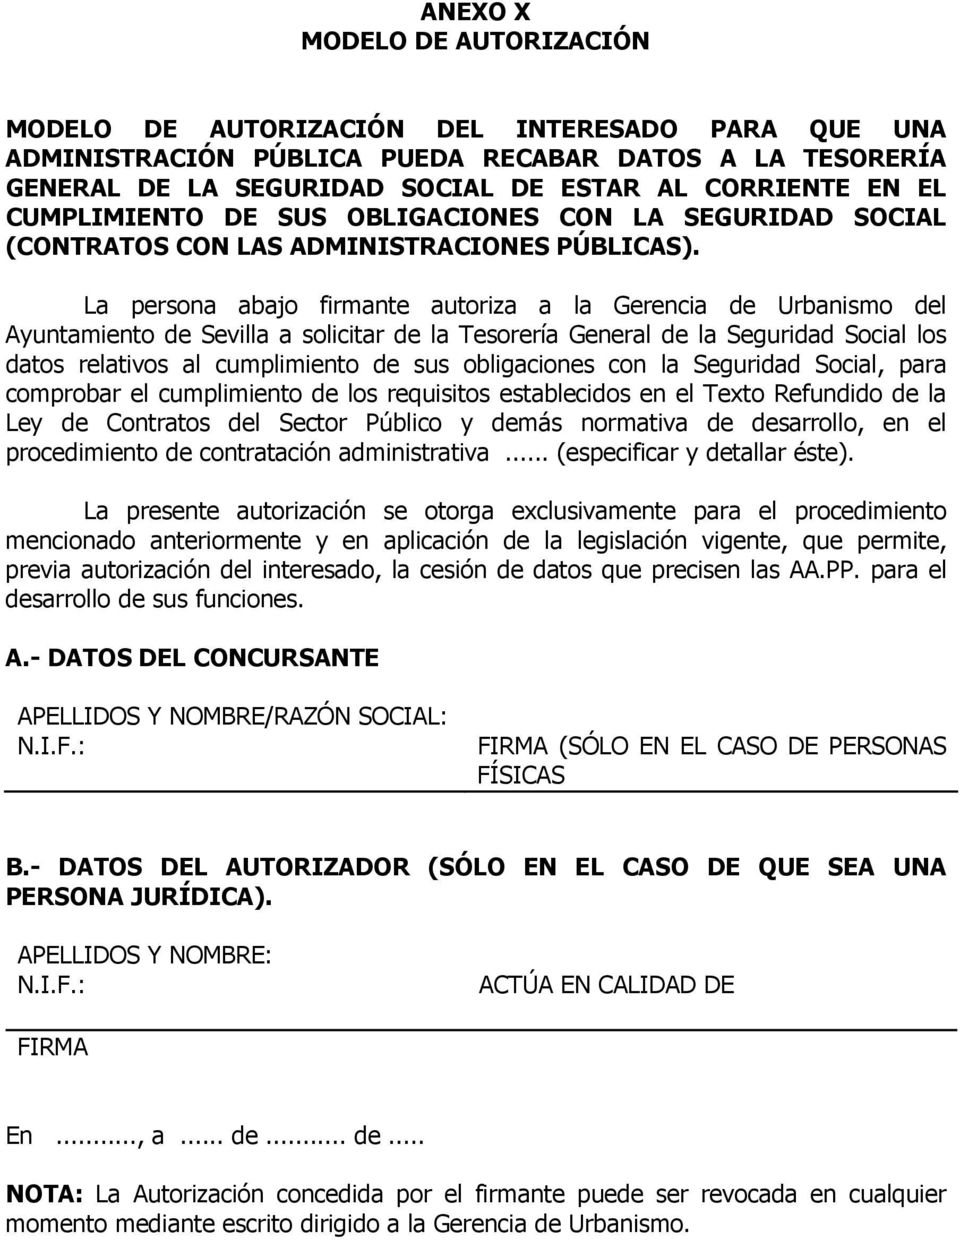 La persona abajo firmante autoriza a la Gerencia de Urbanismo del Ayuntamiento de Sevilla a solicitar de la Tesorería General de la Seguridad Social los datos relativos al cumplimiento de sus